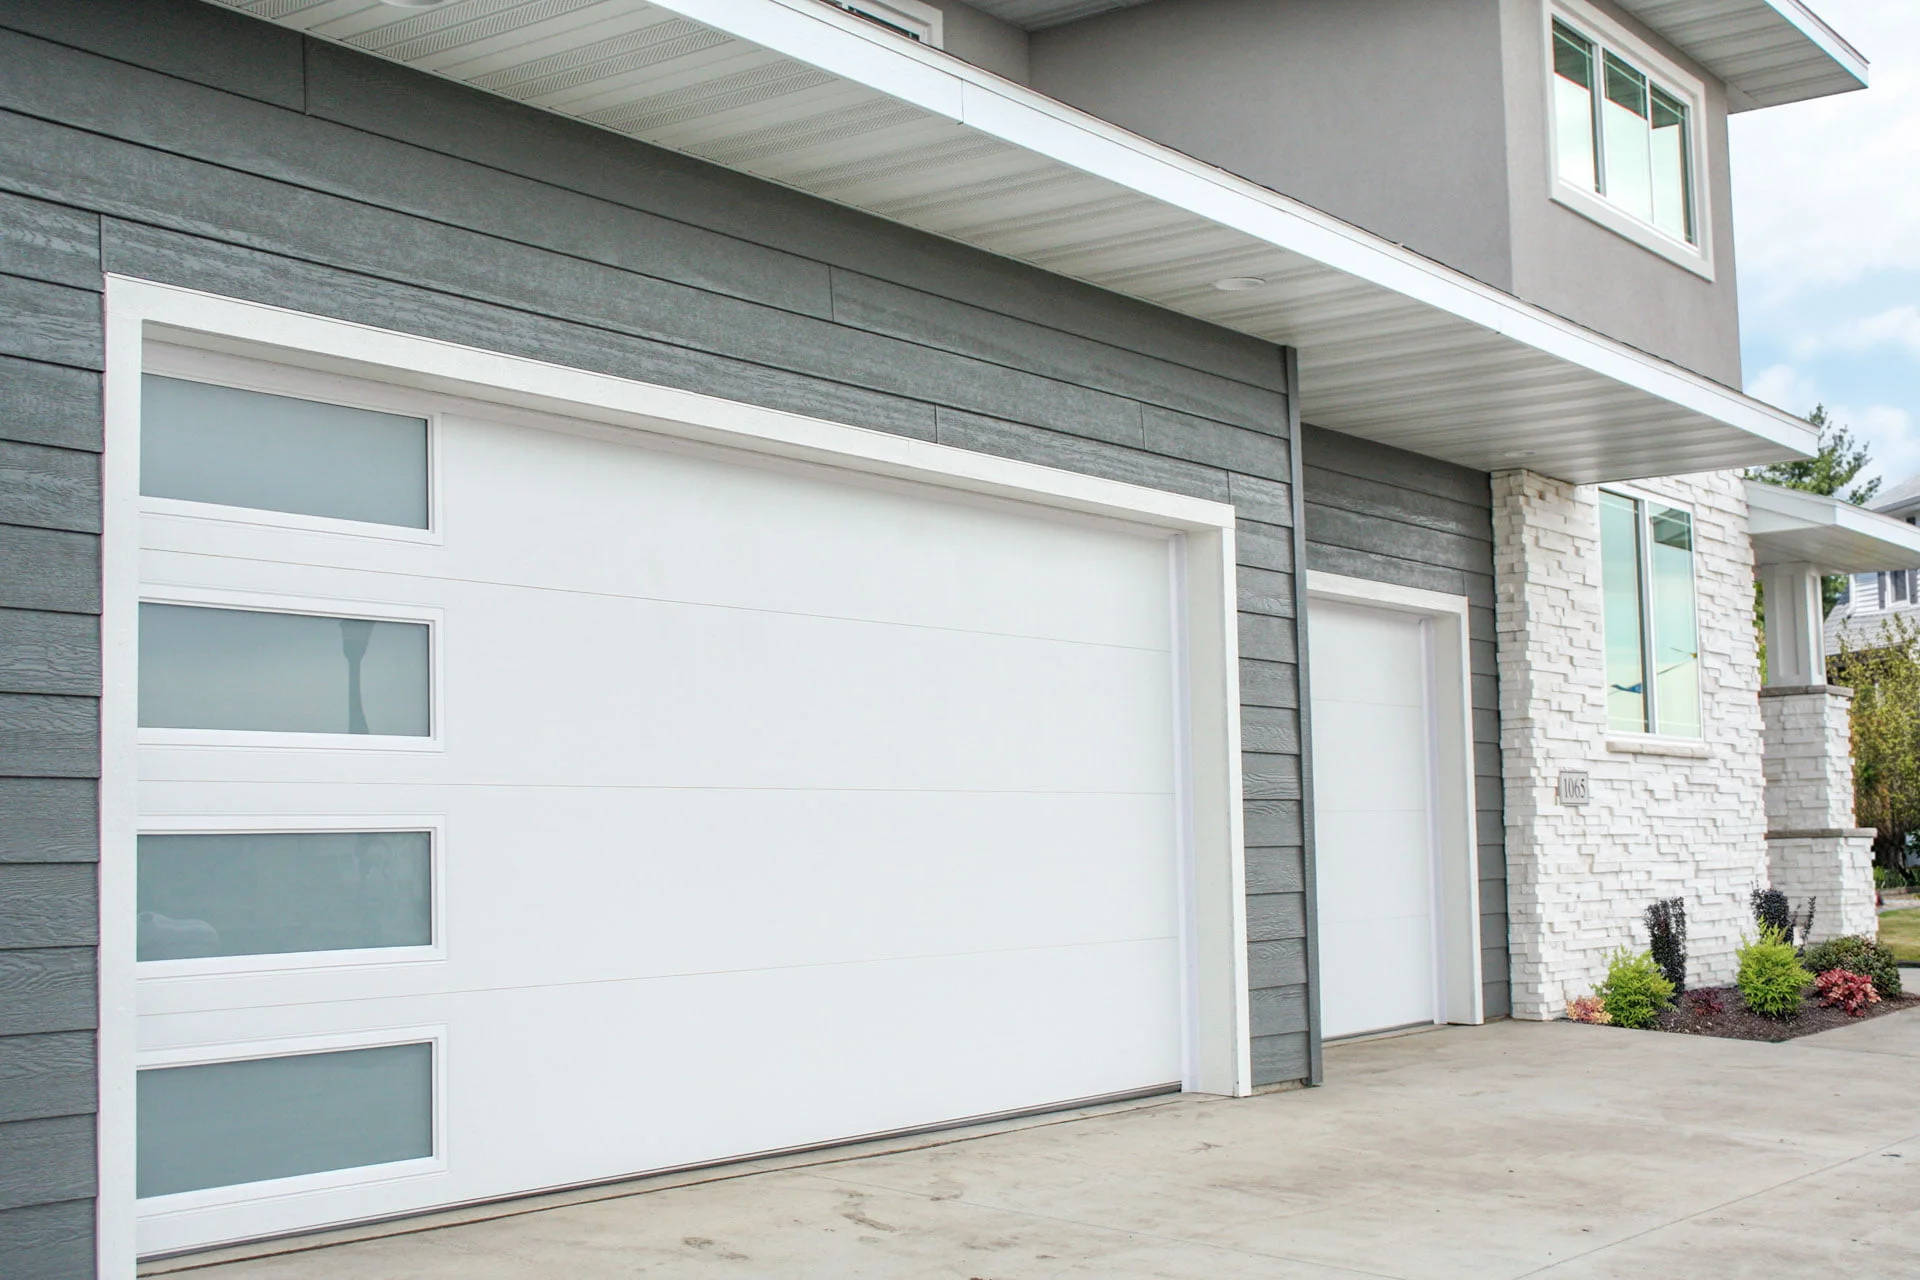 How Often Does Garage Door Needs Servicing